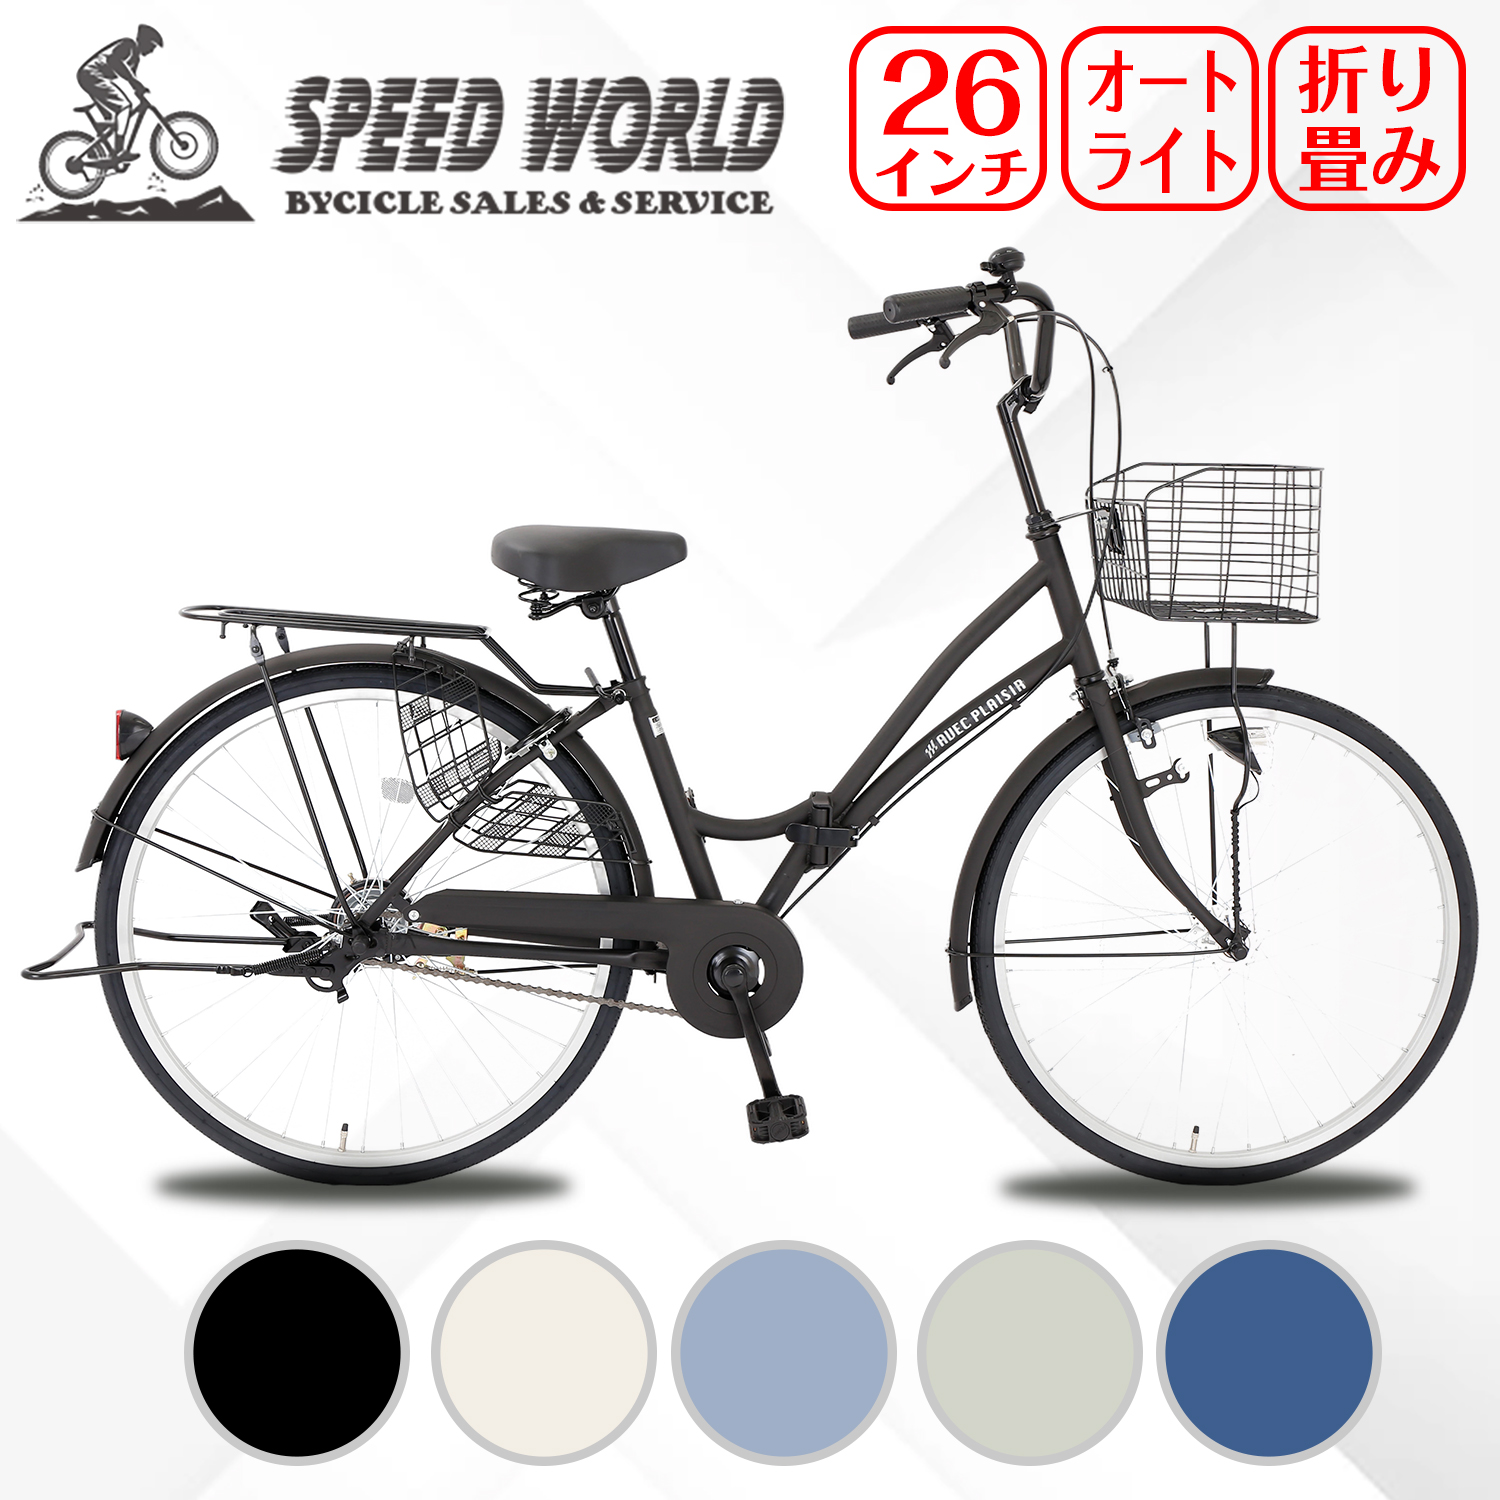 【楽天市場】ママチャリ シティサイクル 26インチ 自転車 シティ車 